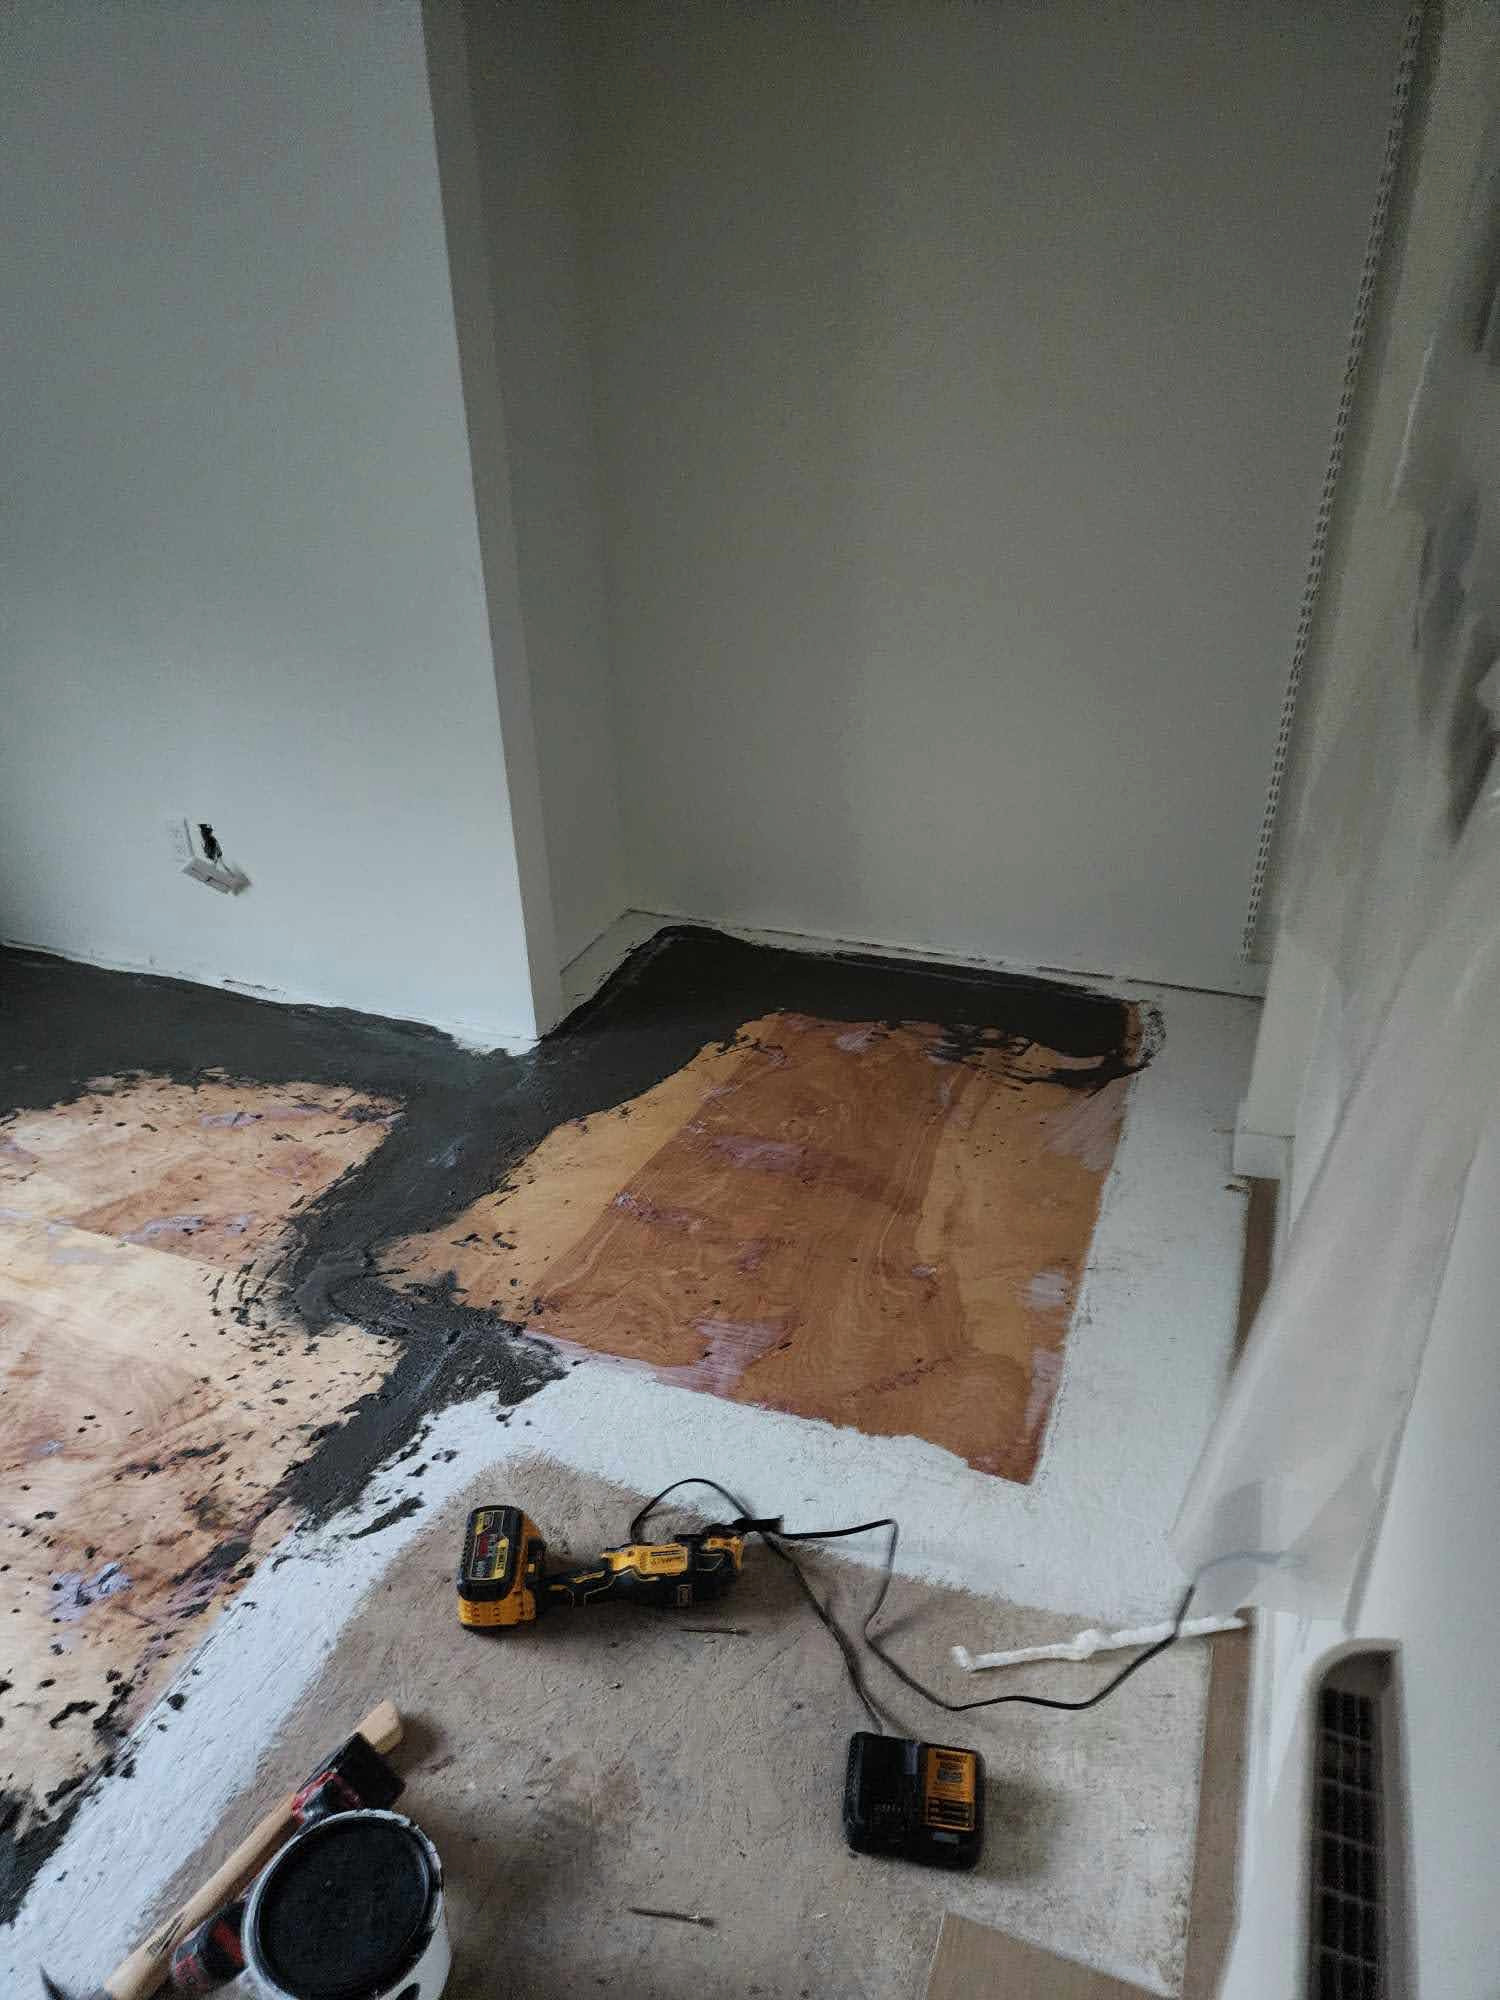 Mold Remediation & Flooring Installation